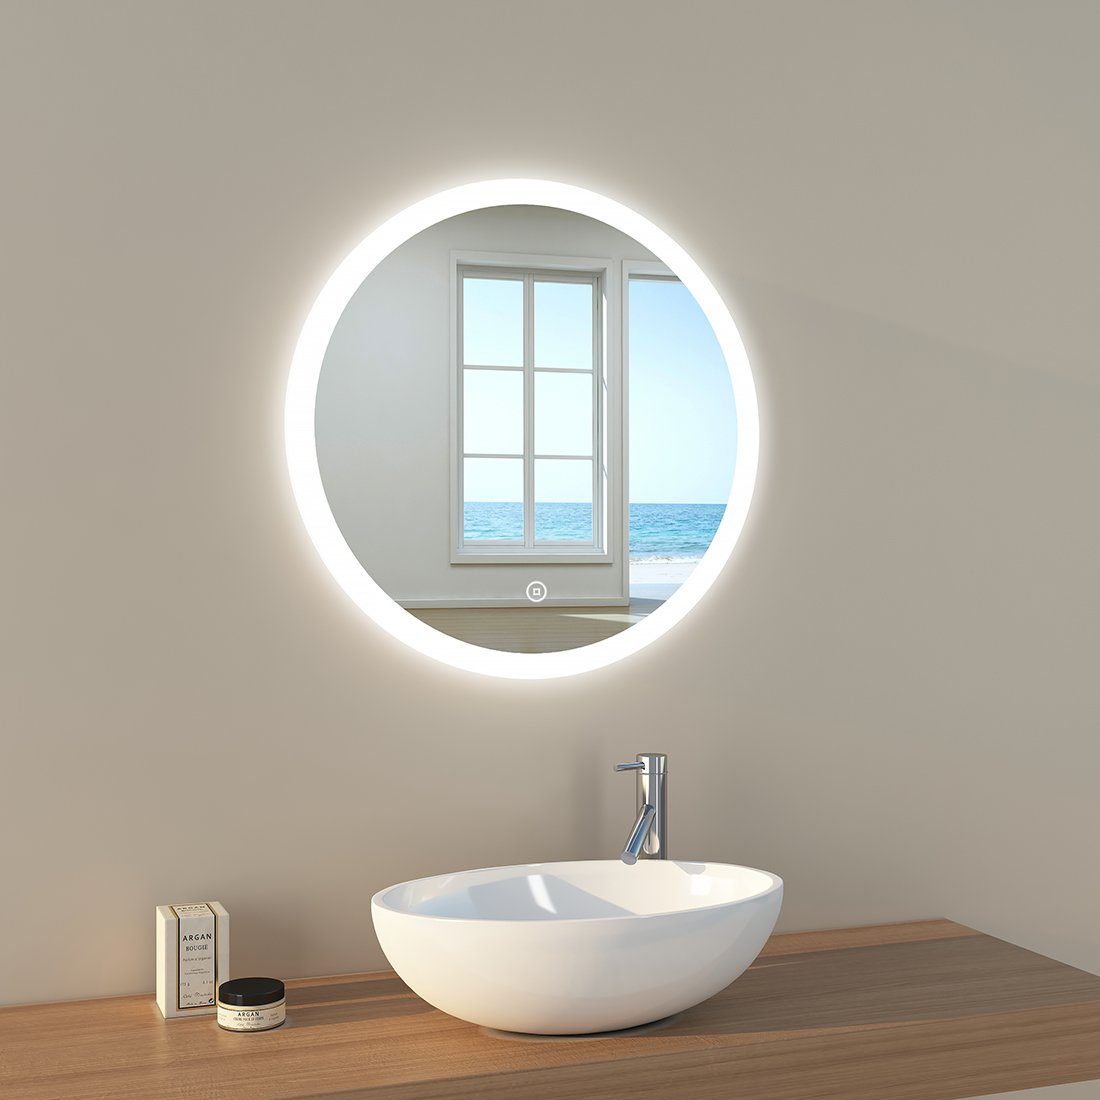 mit A) Badezimmerspiegel, EMKE Badspiegel Beleuchtung, Rund Badspiegel mit LED Touch-Schalter(Type EMKE